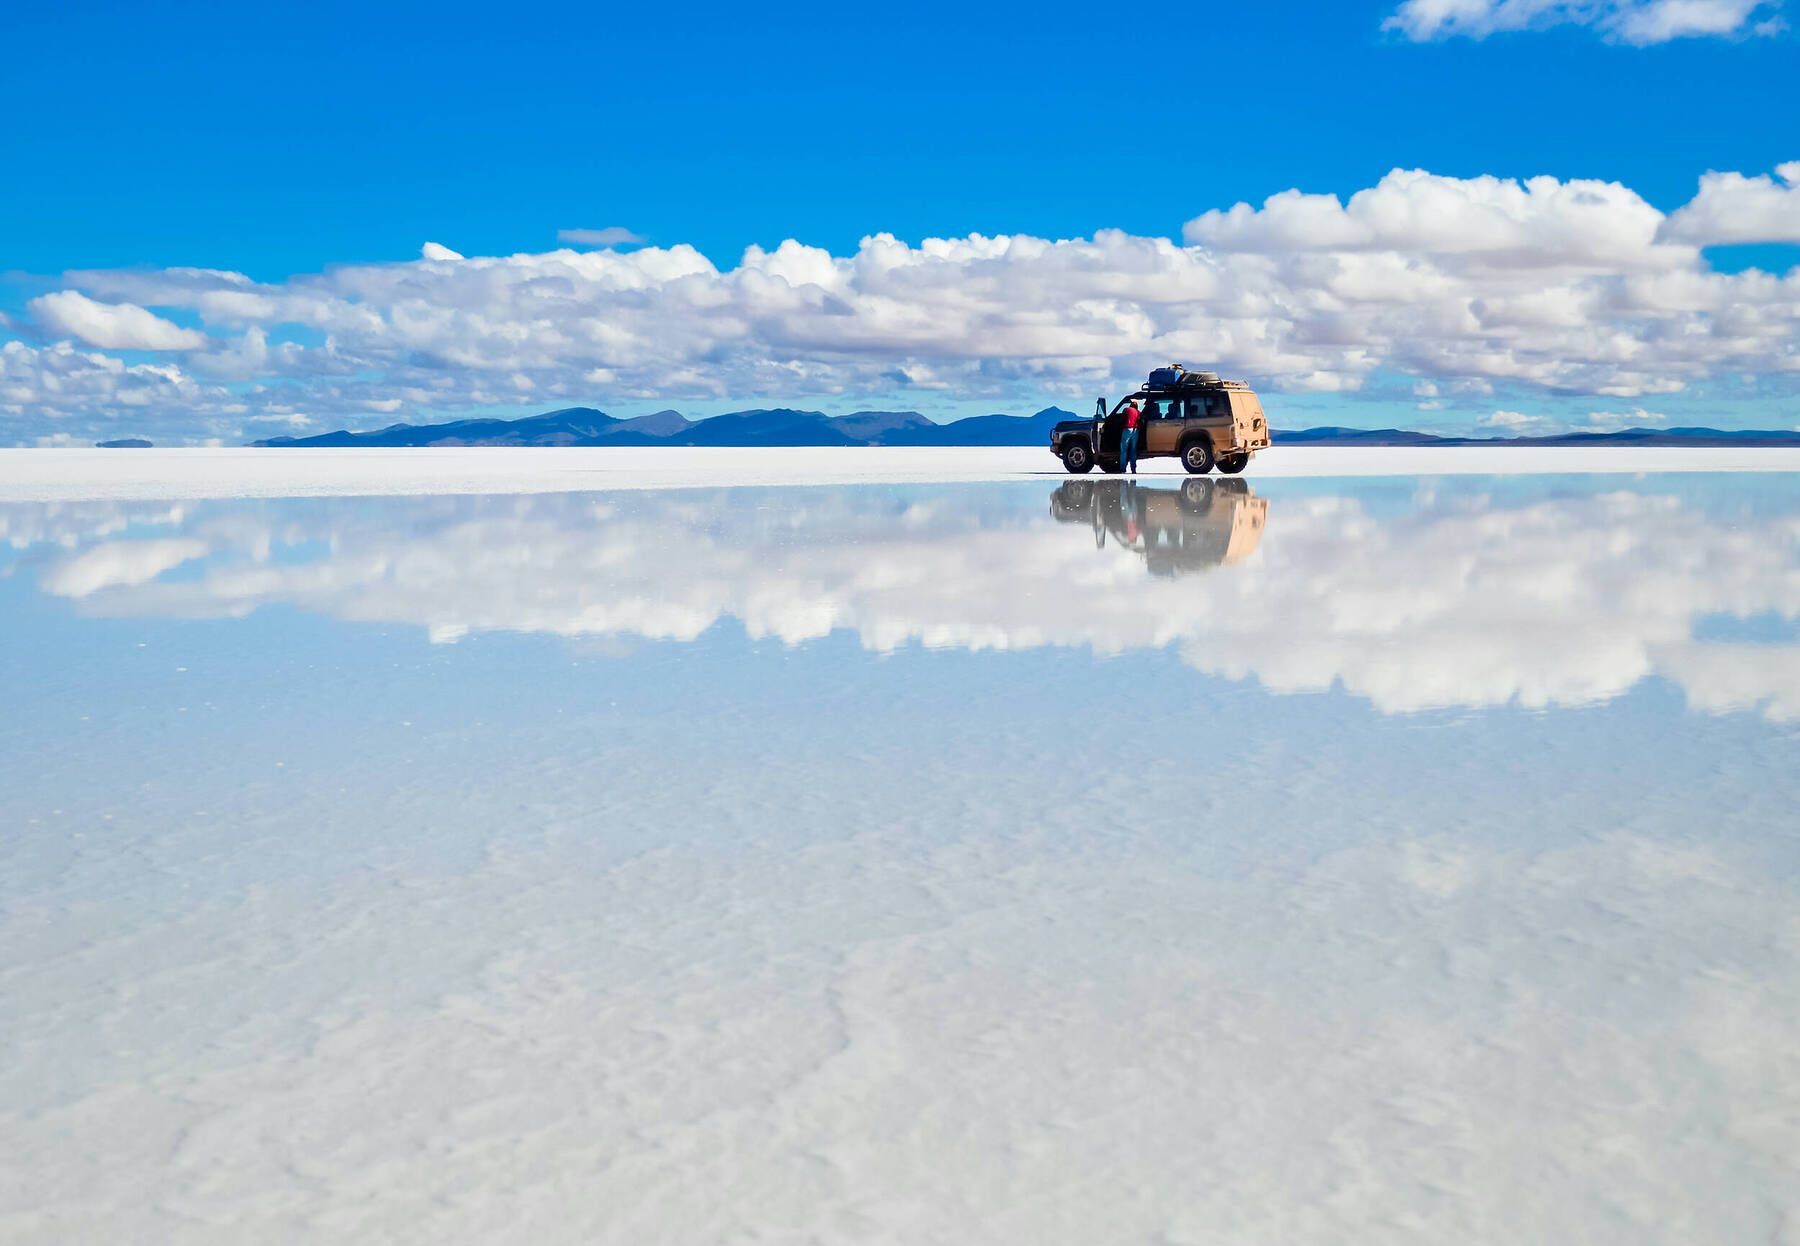 A journey across the Bolivian salt flats